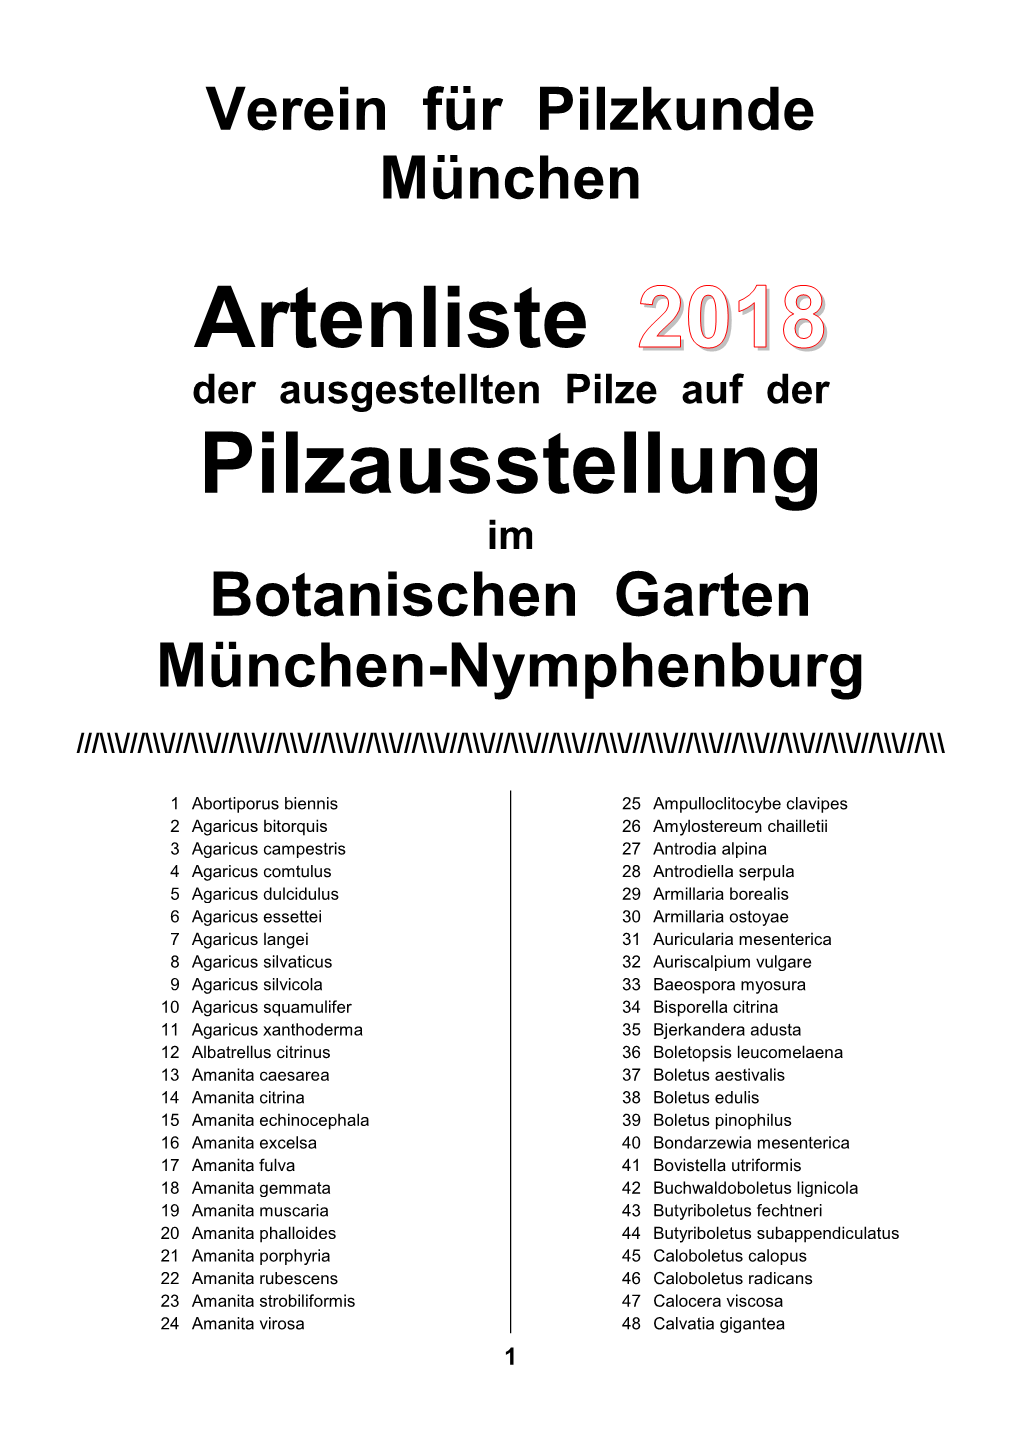 Artenliste 2018 Pilzausstellung